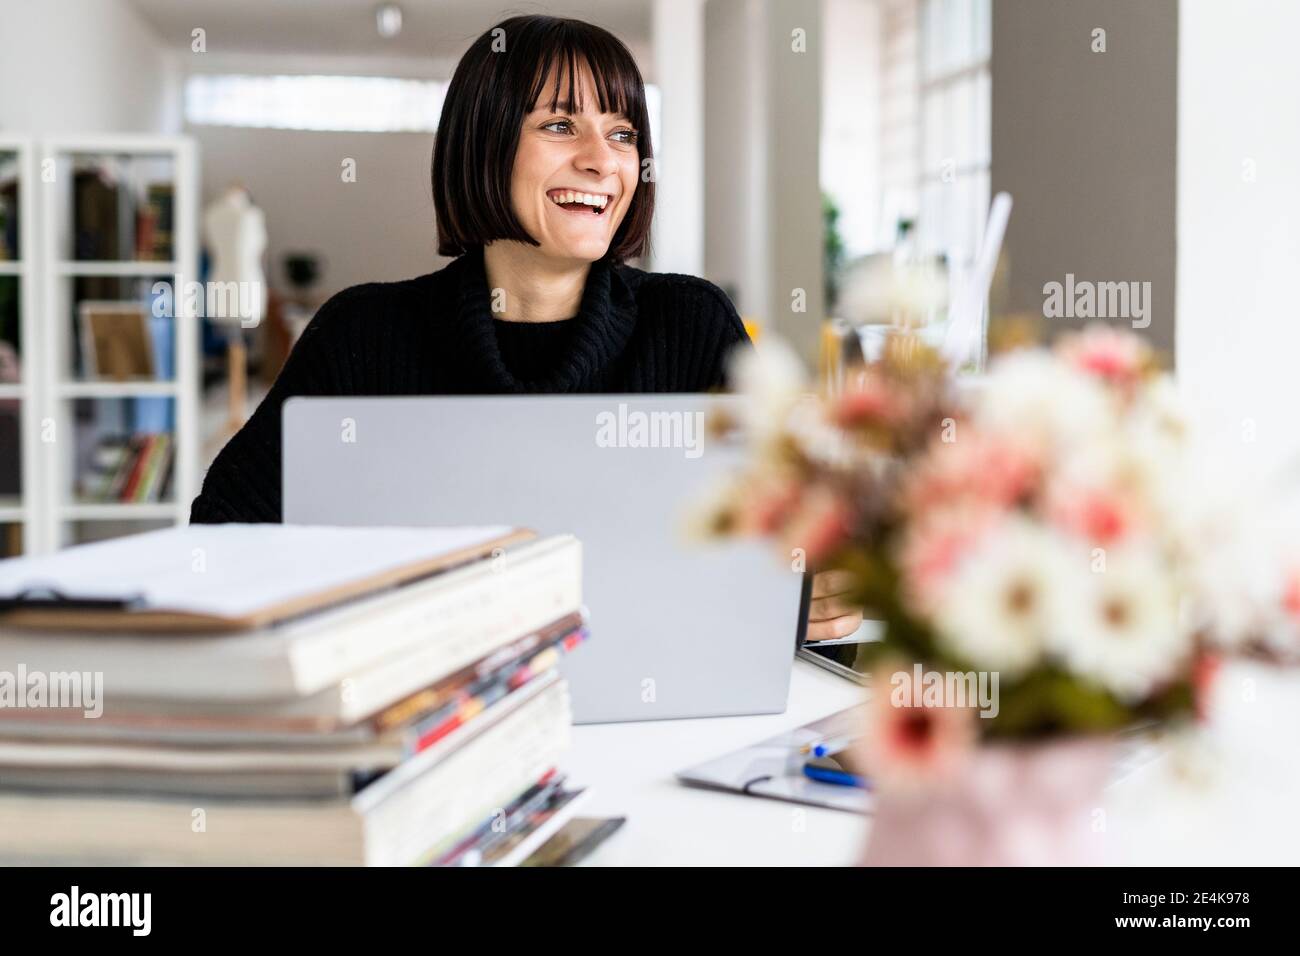 Lächelnder junger Student mit Laptop, der im Arbeitszimmer wegschaut Stockfoto